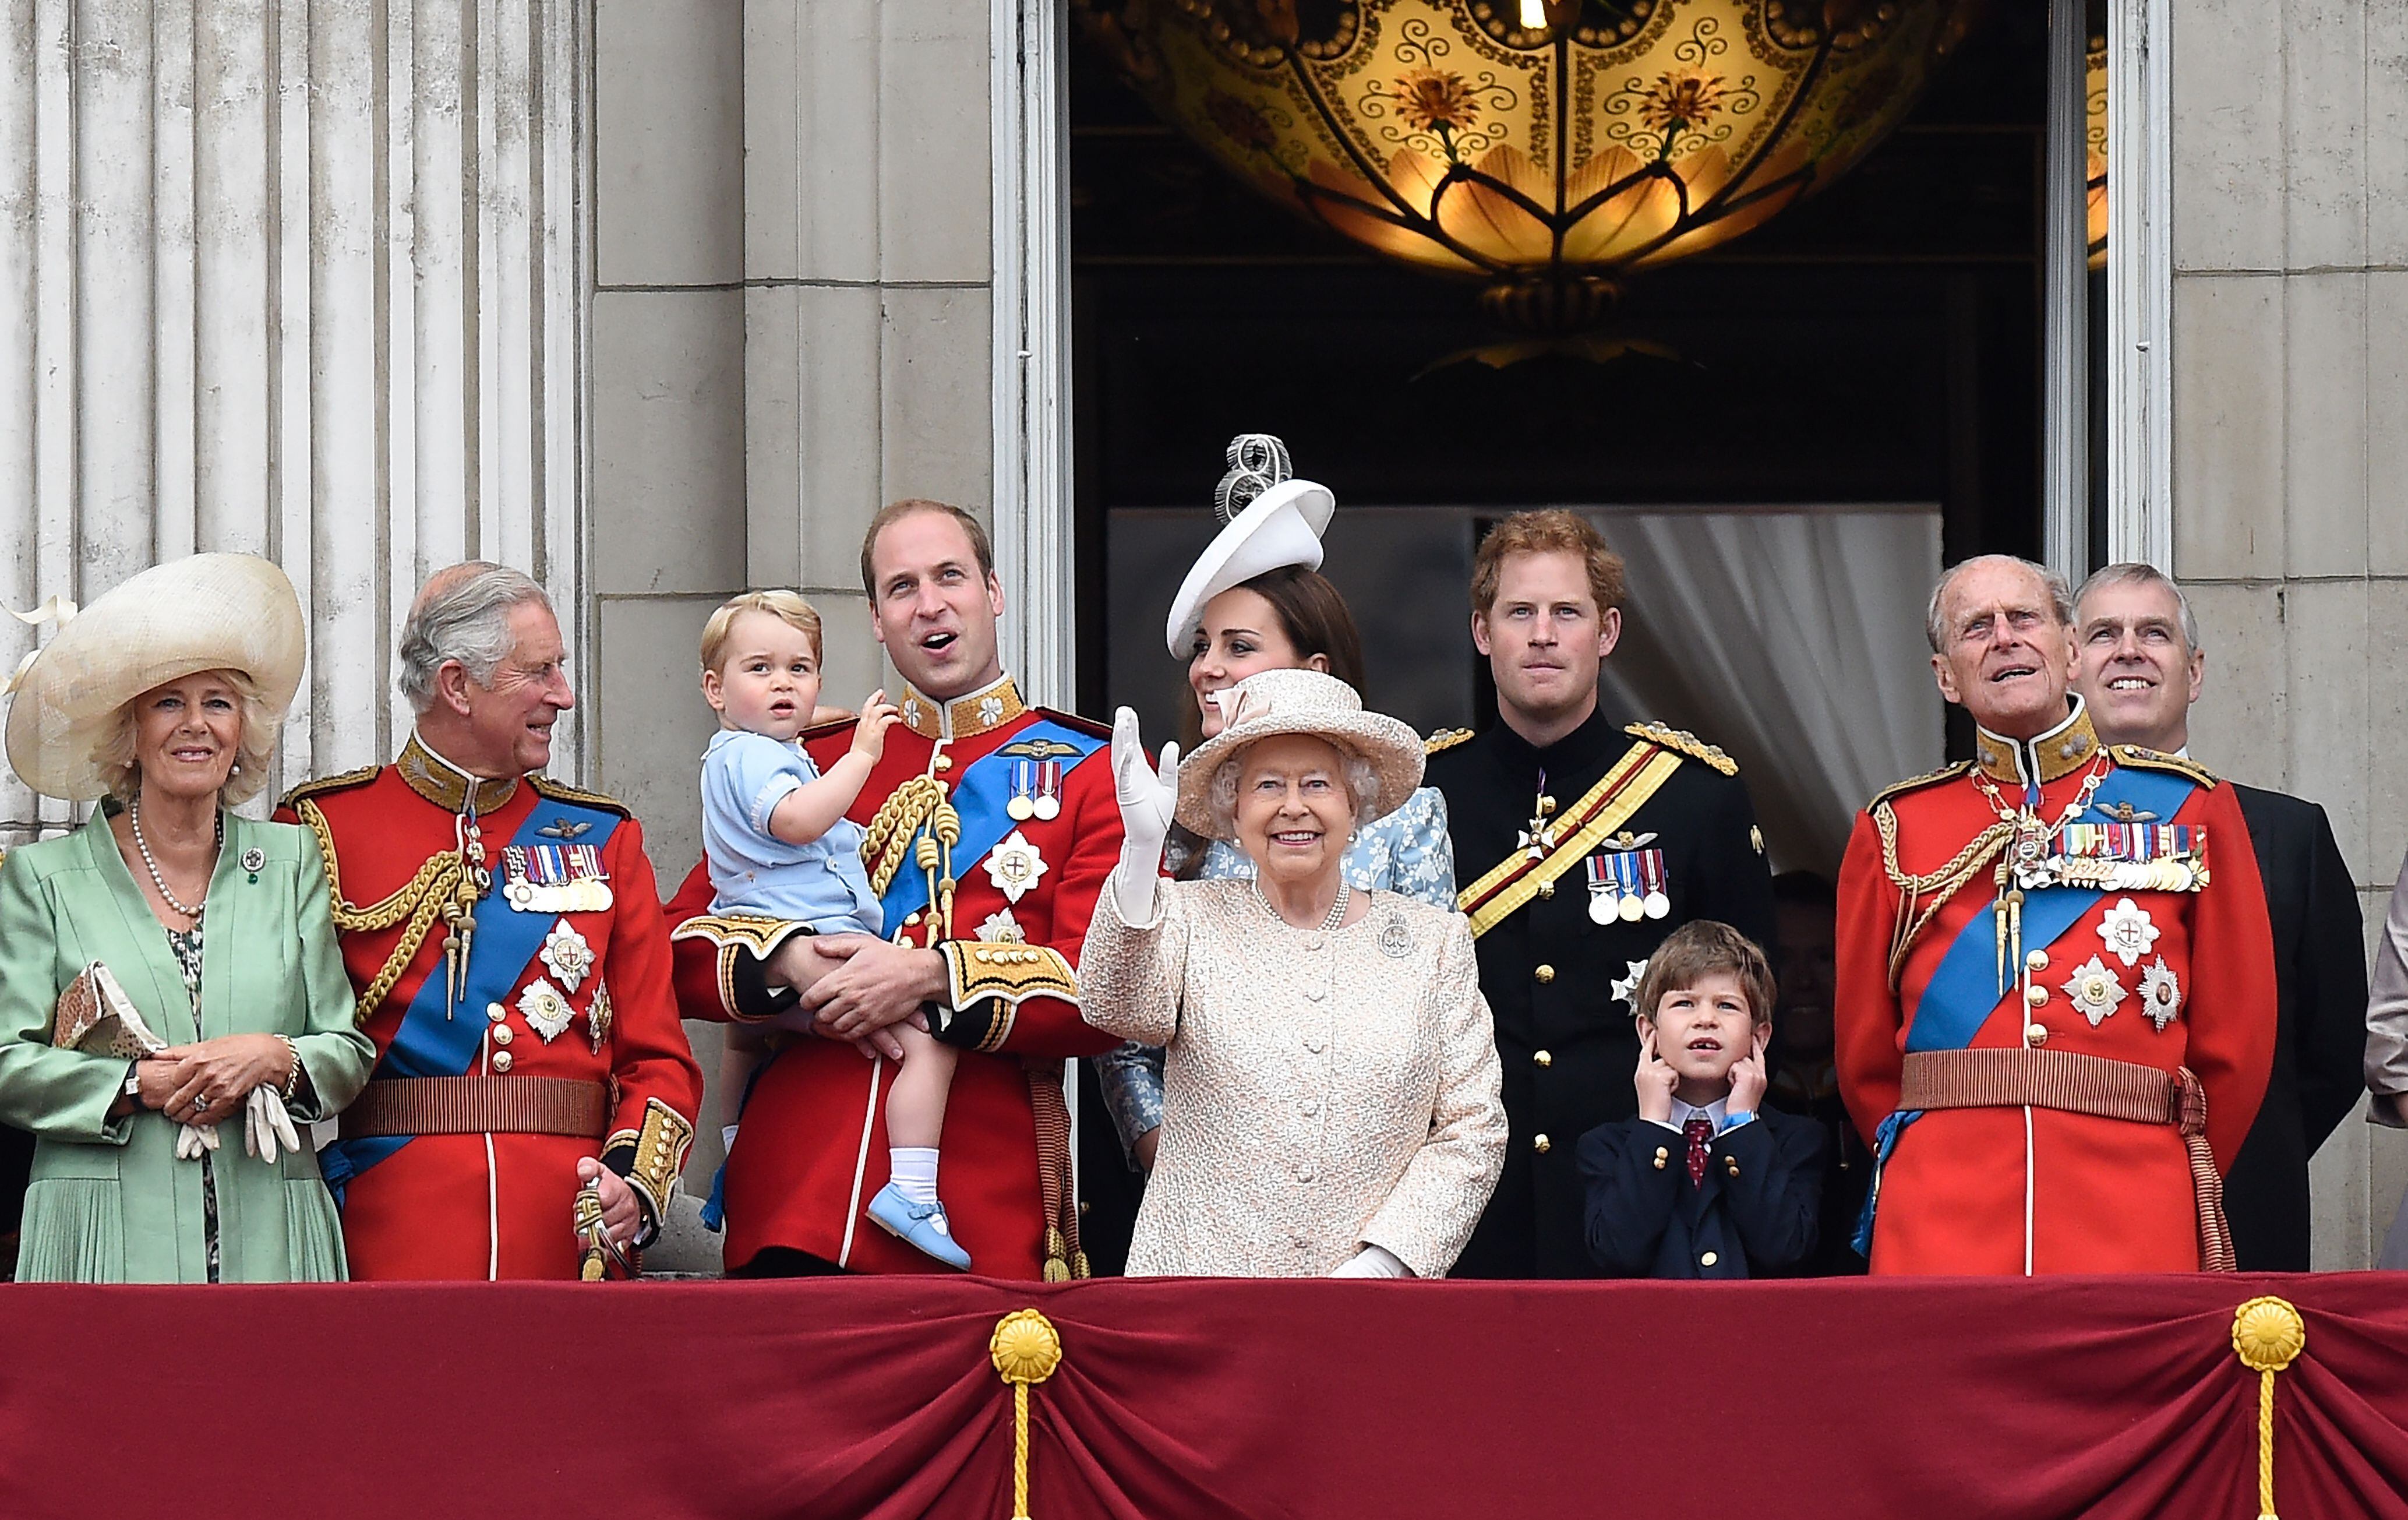 Una imagen fechada el 13 de junio de 2015 muestra a la reina Isabel II de Gran Bretaña (centro) y miembros de la familia real en el balcón del palacio de Buckingham después de la tradicional ceremonia 'Trooping the Colour' en Londres. Desde la izquierda están Camila, duquesa de Cornualles; príncipe Carlos; príncipe Jorge; príncipe Guillermo, duque de Cambridge; Catalina, duquesa de Cambridge; príncipe Harry; príncipe Felipe, duque de Edimburgo, y príncipe Andrés.